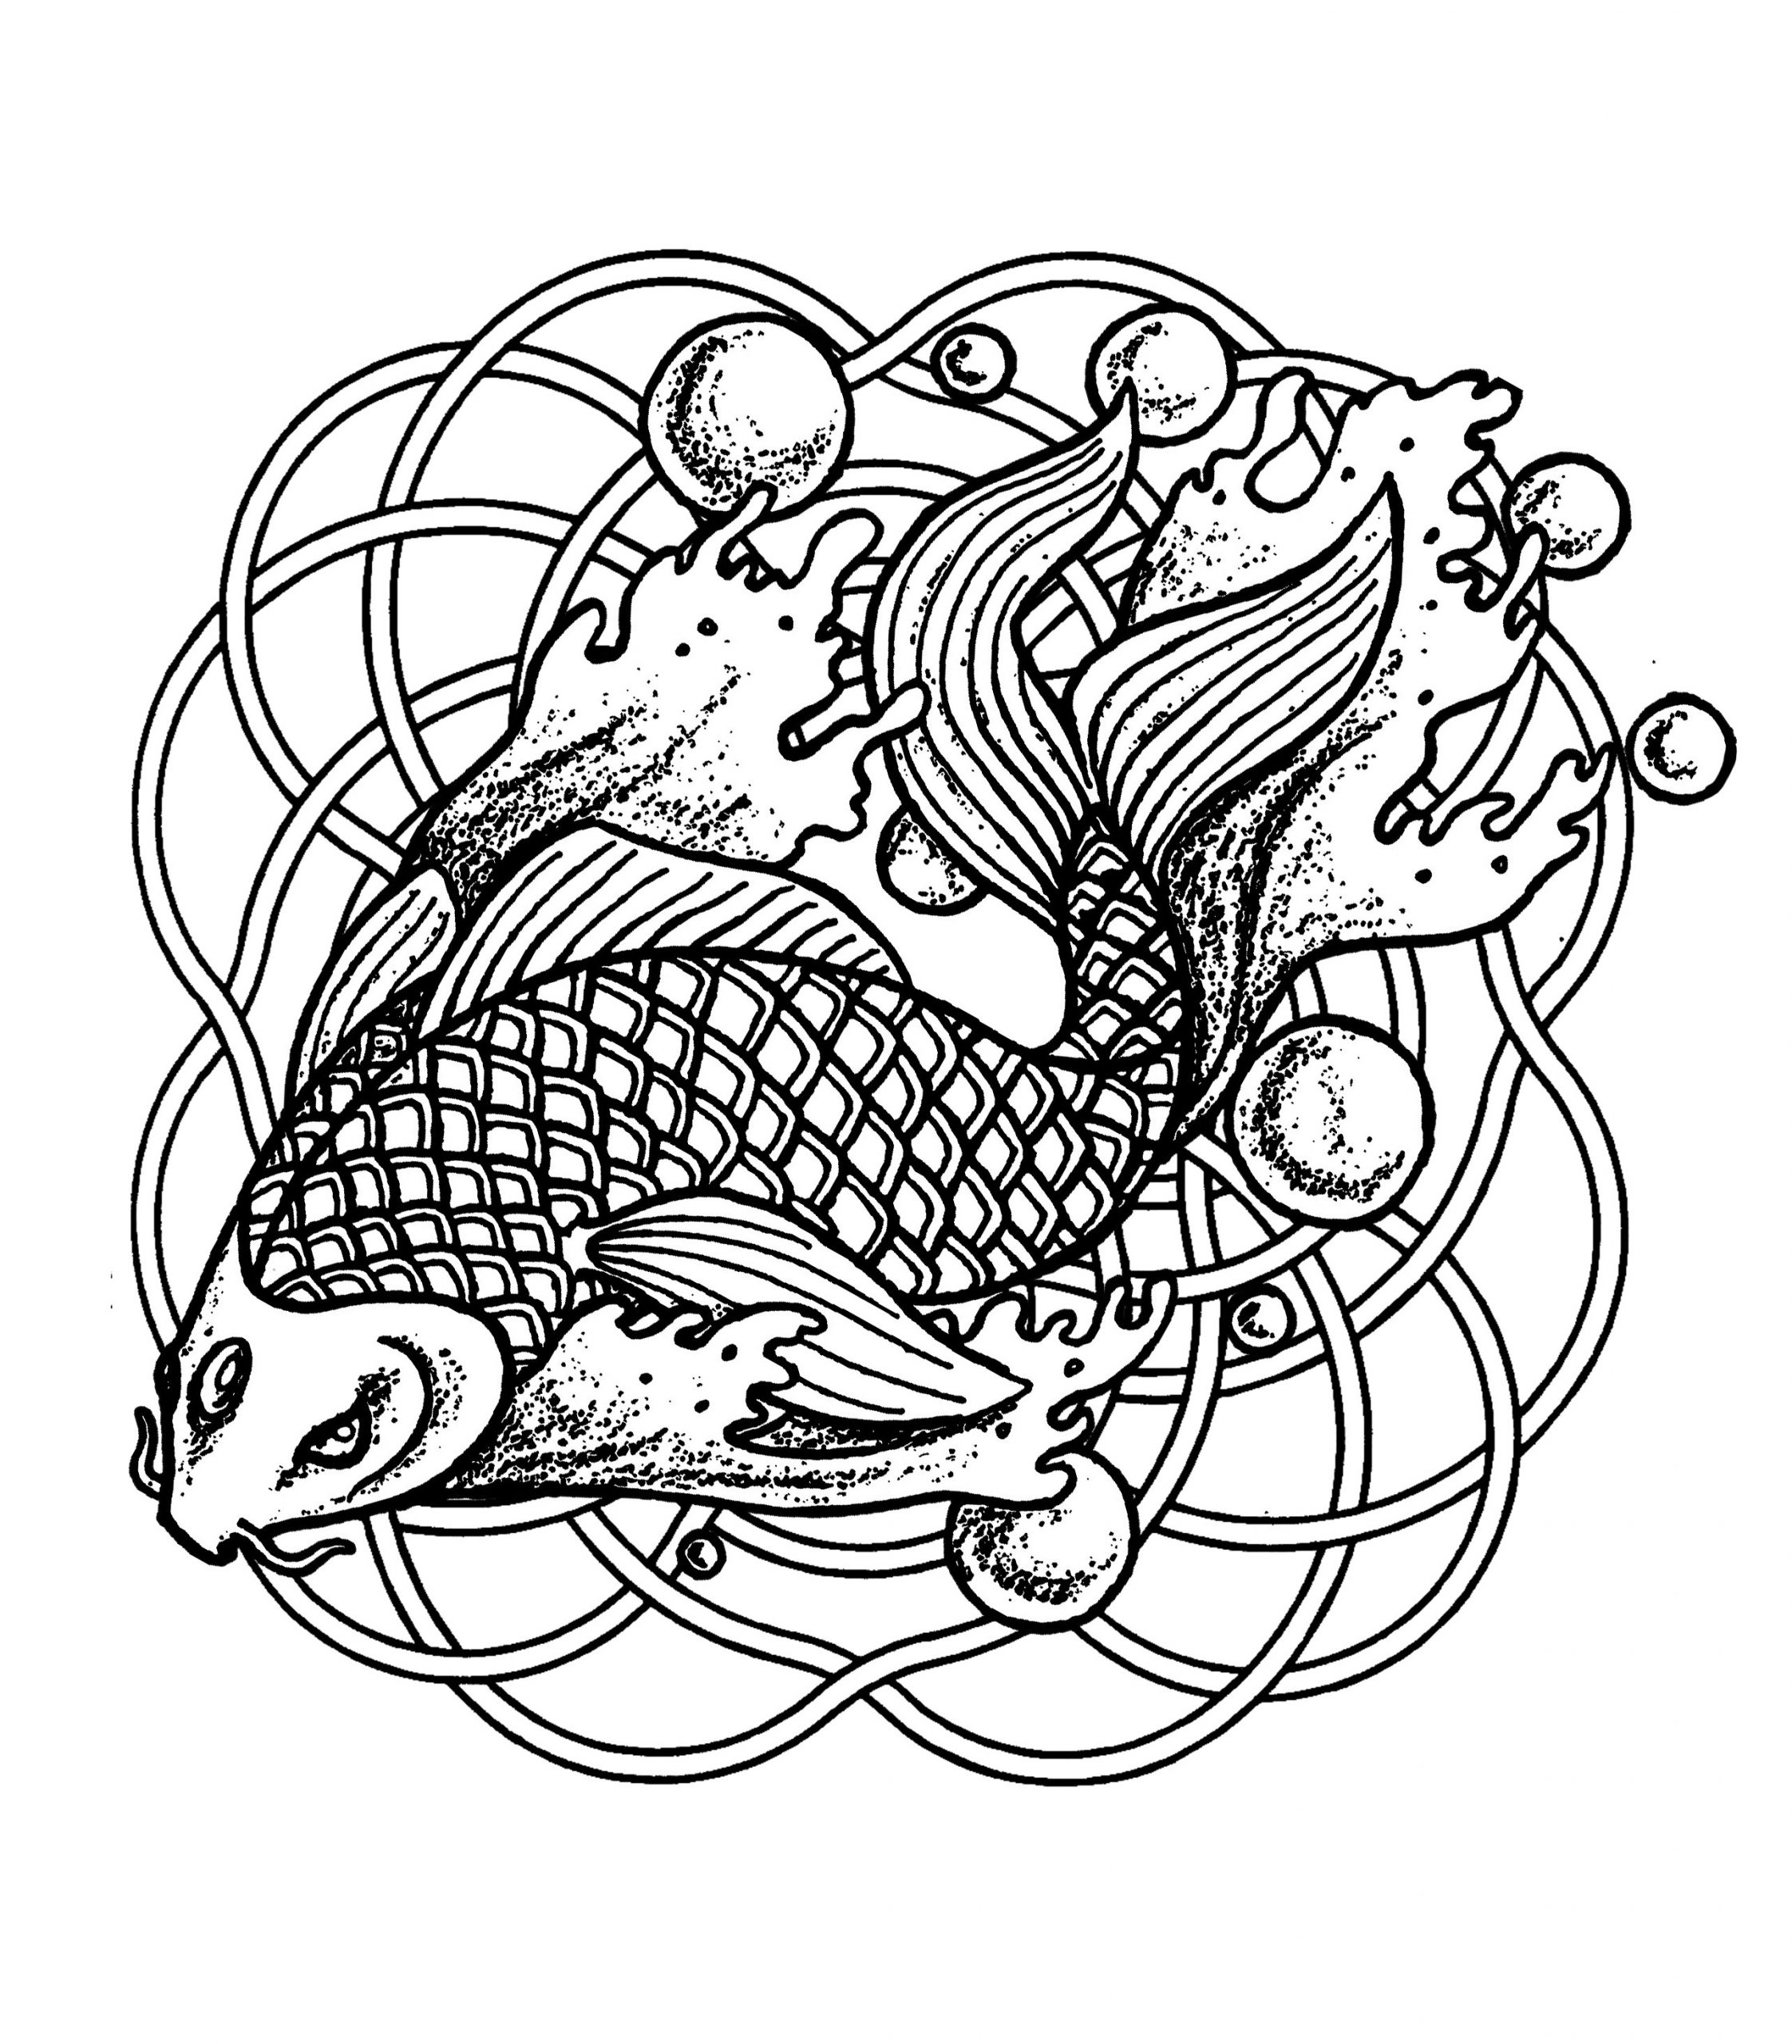 image=mandalas coloring page mandala fish and bubles 1